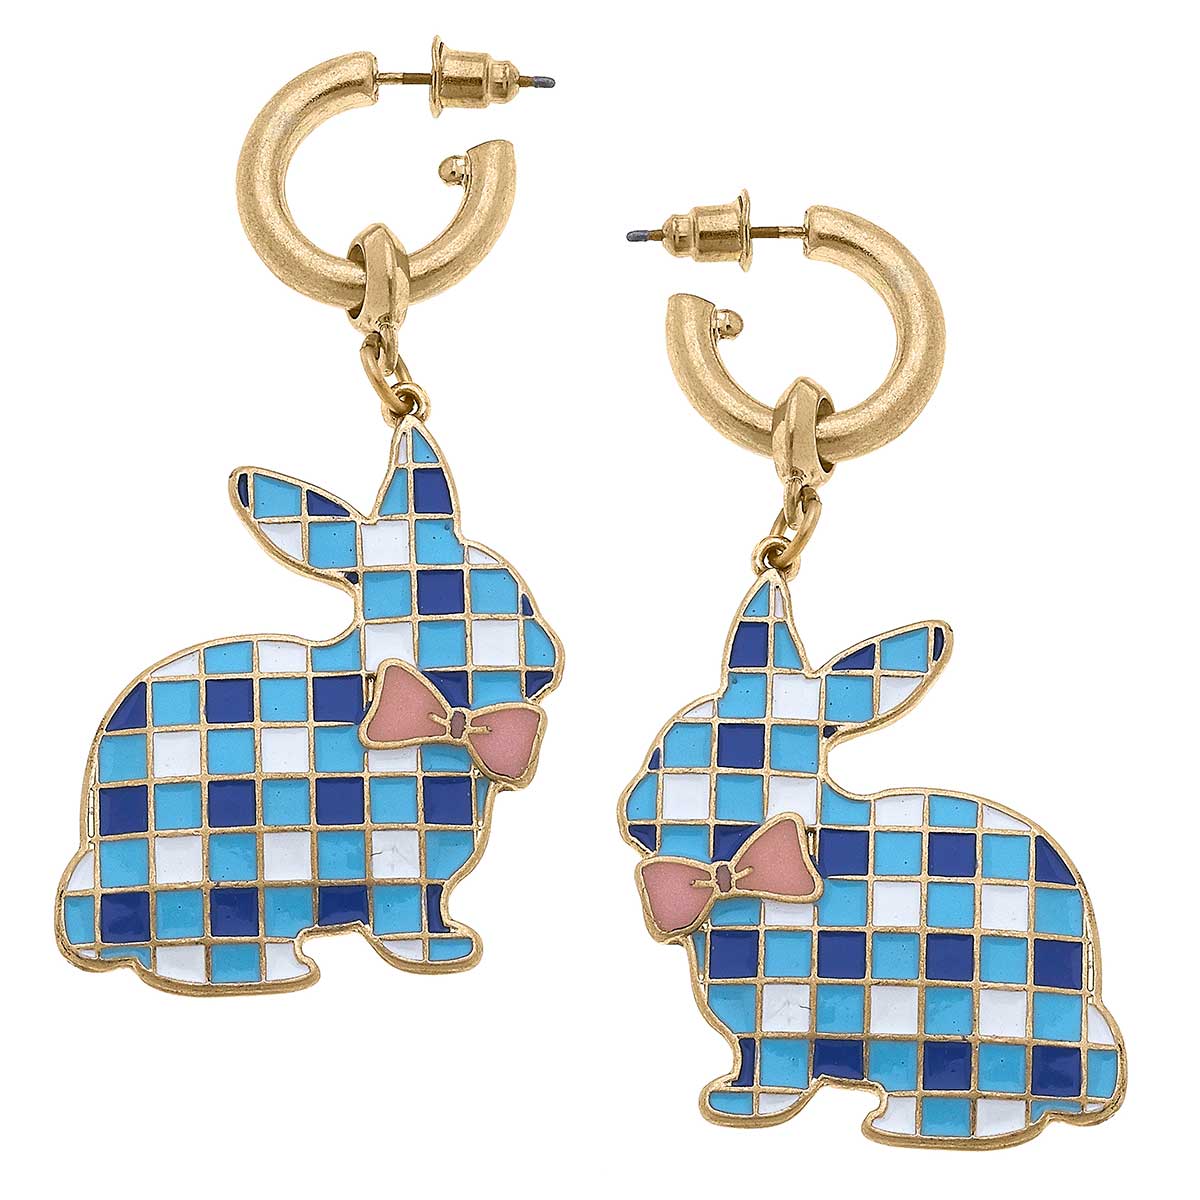 Stella Enamel Gingham Bunny Earrings in Blue & White - The Preppy Bunny